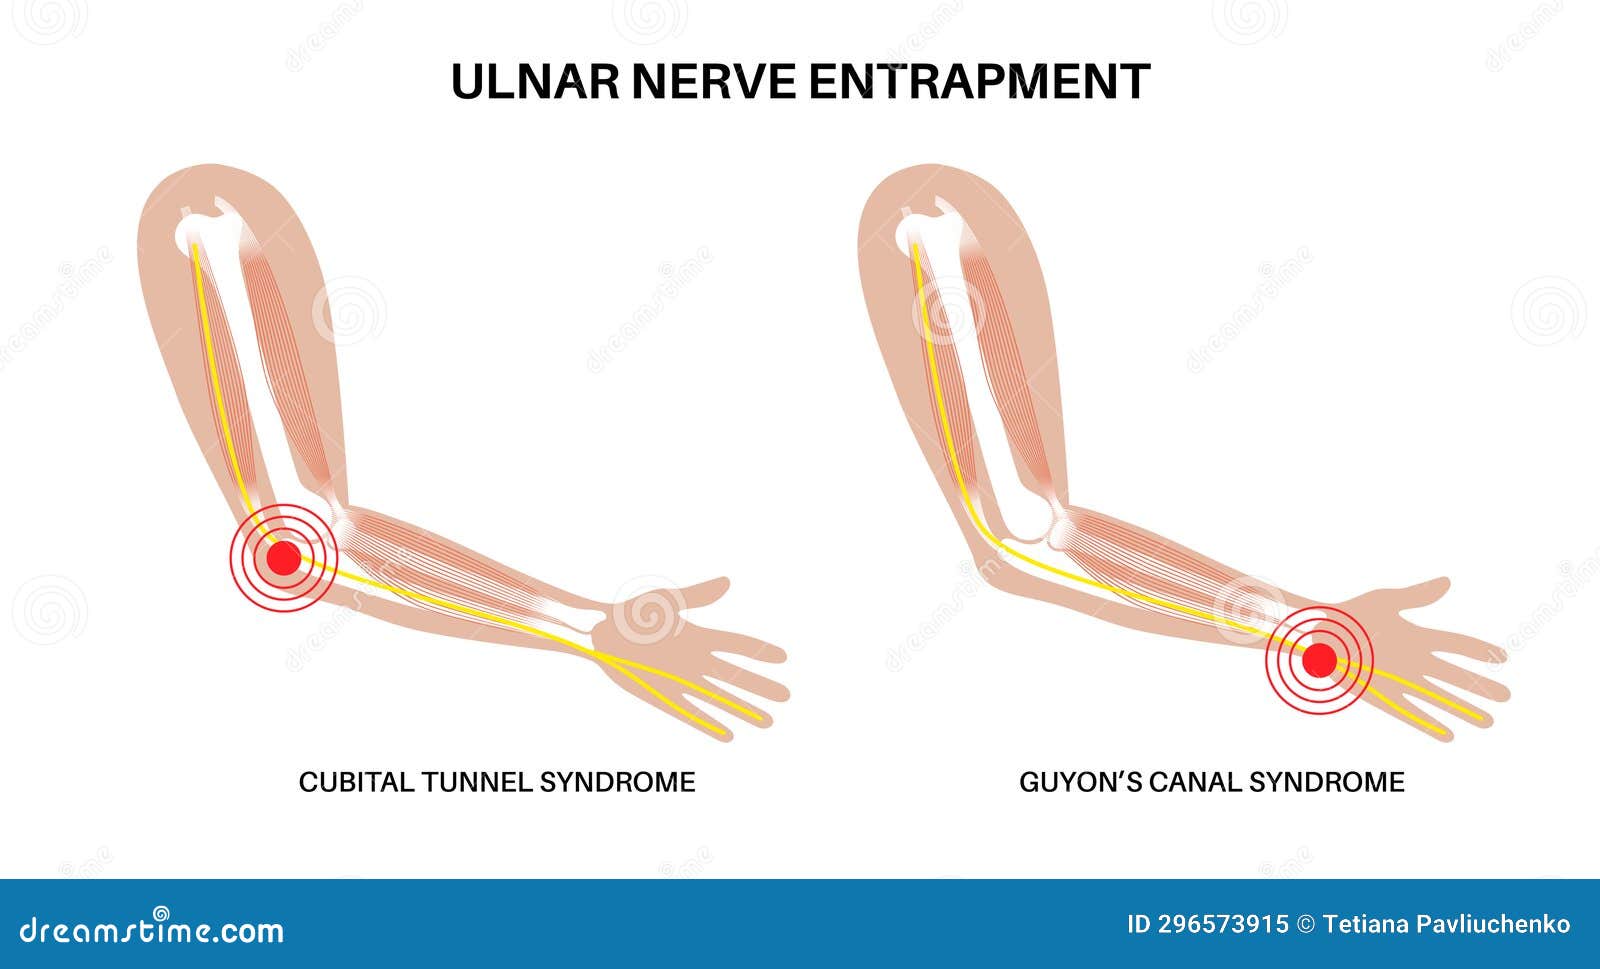 ulnar nerve entrapment